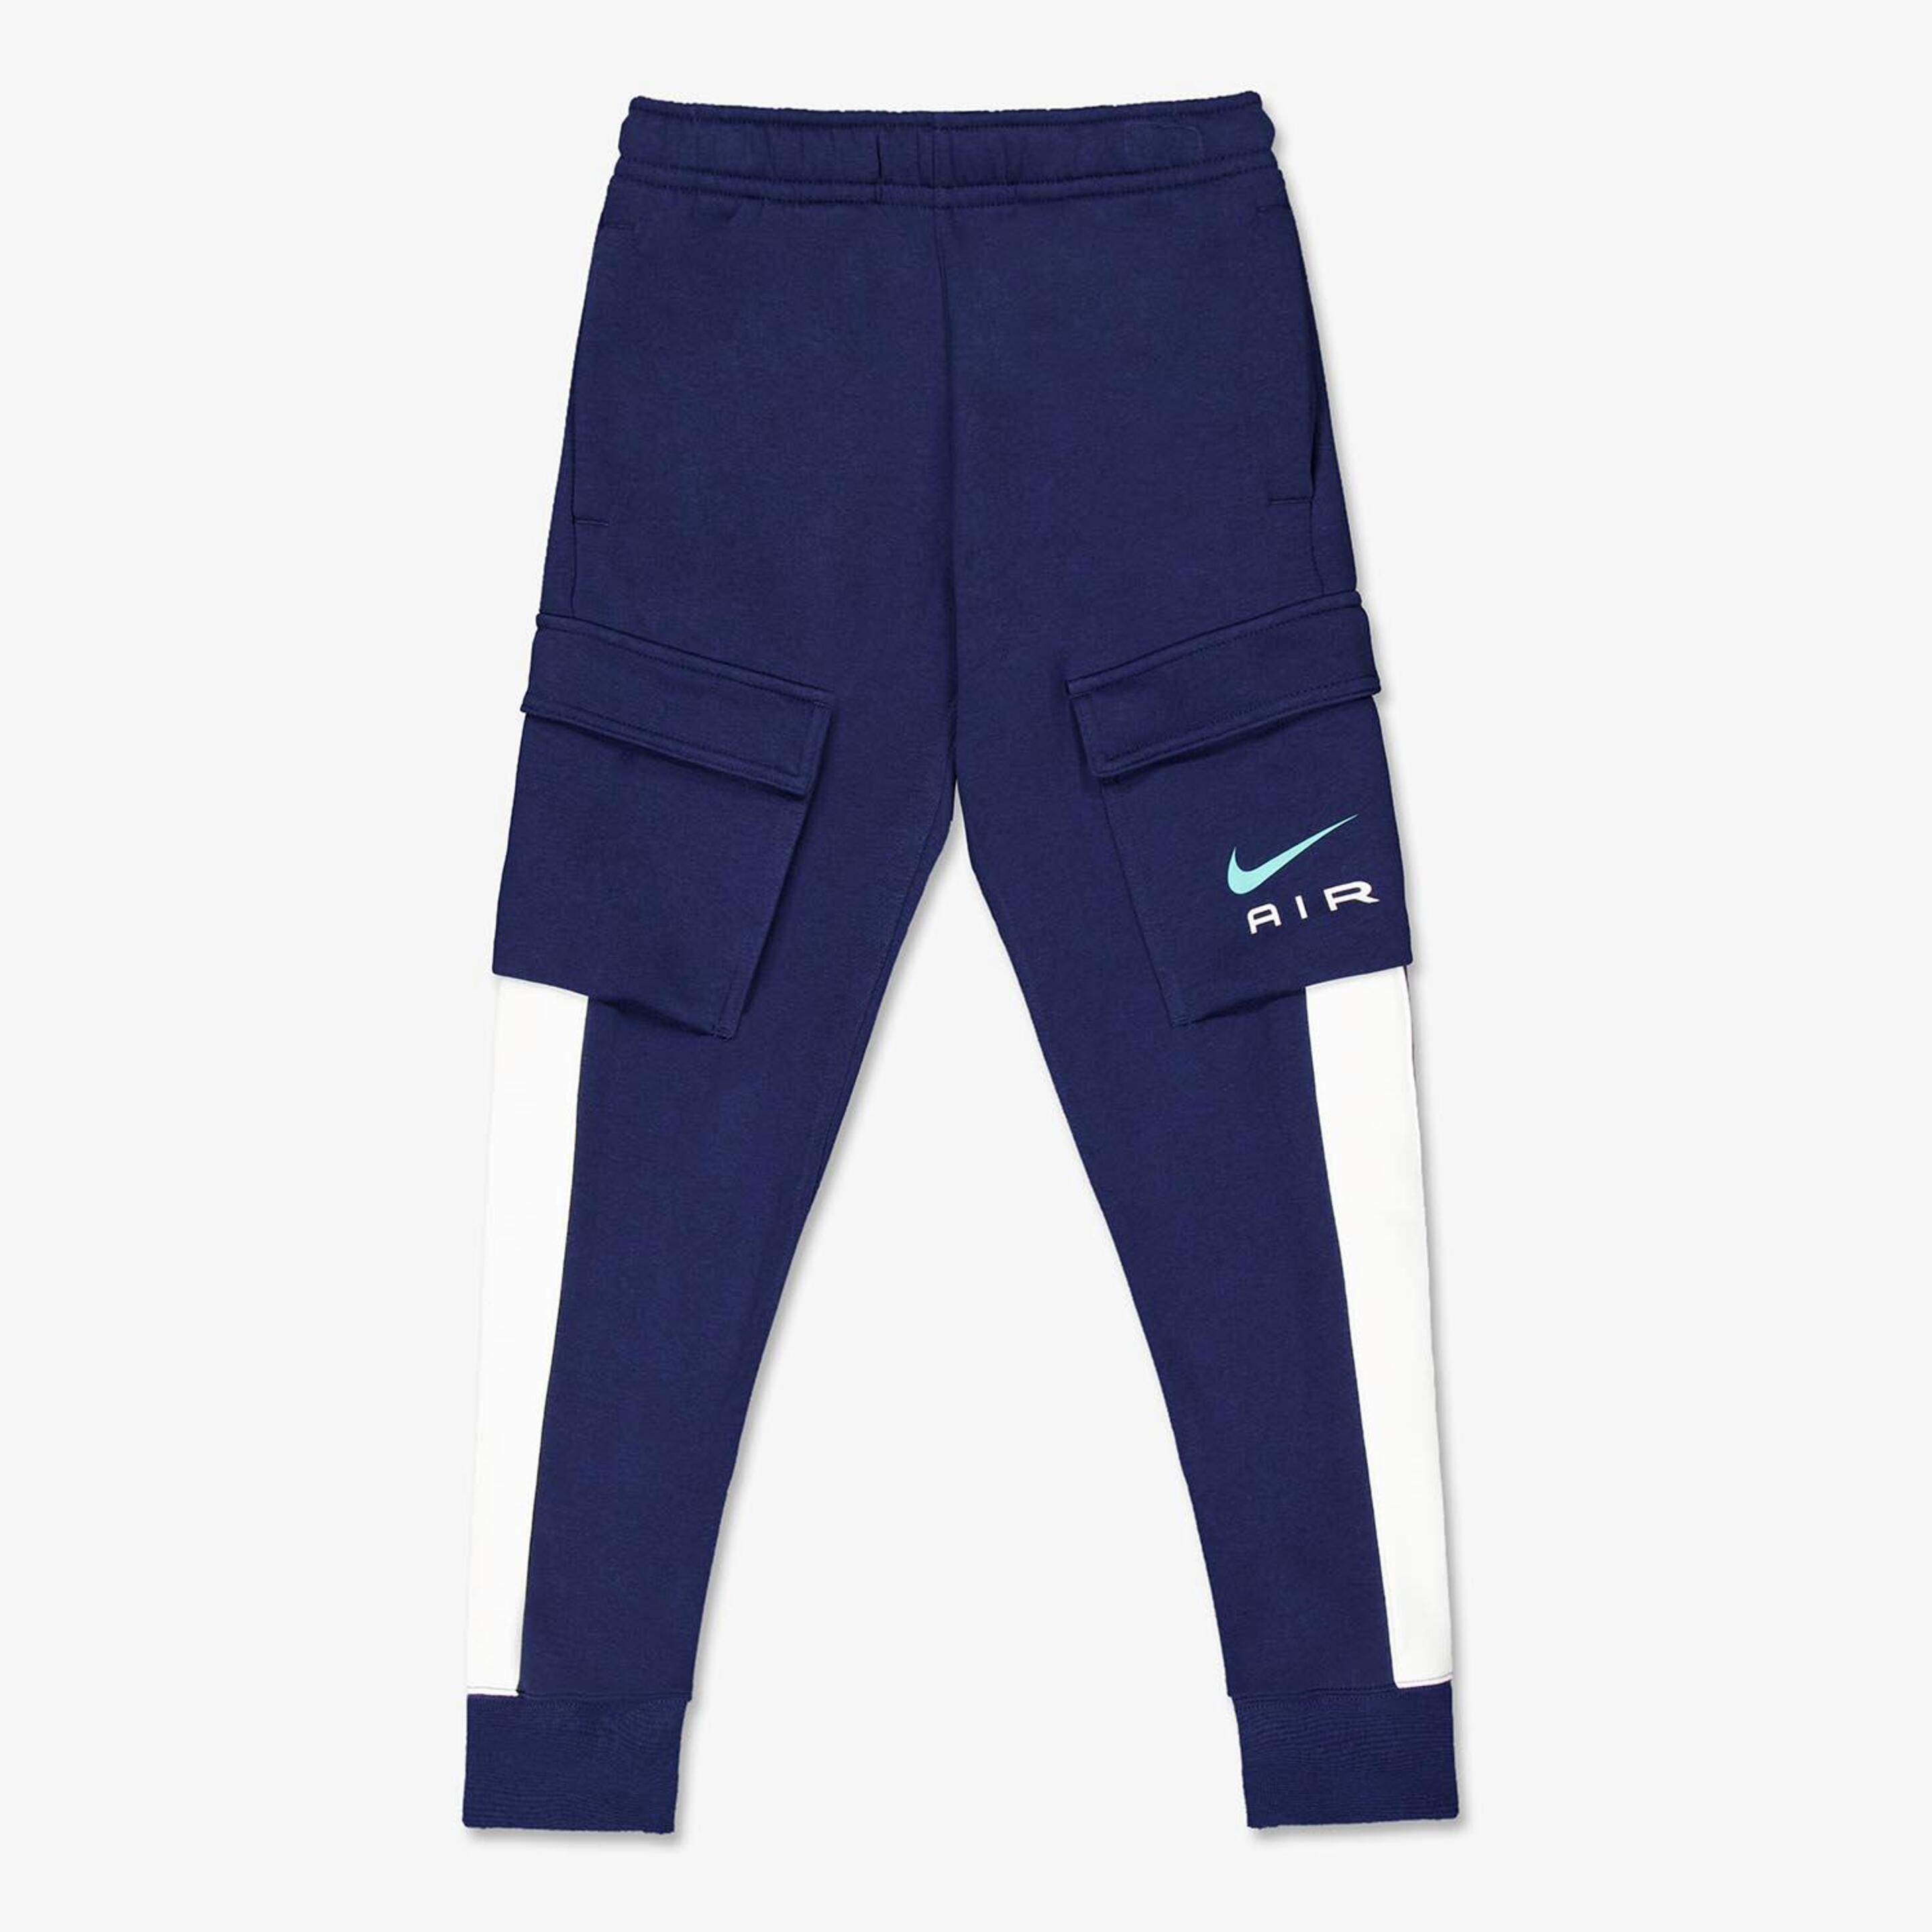 Pantalón Nike - azul - Pantalón Junior